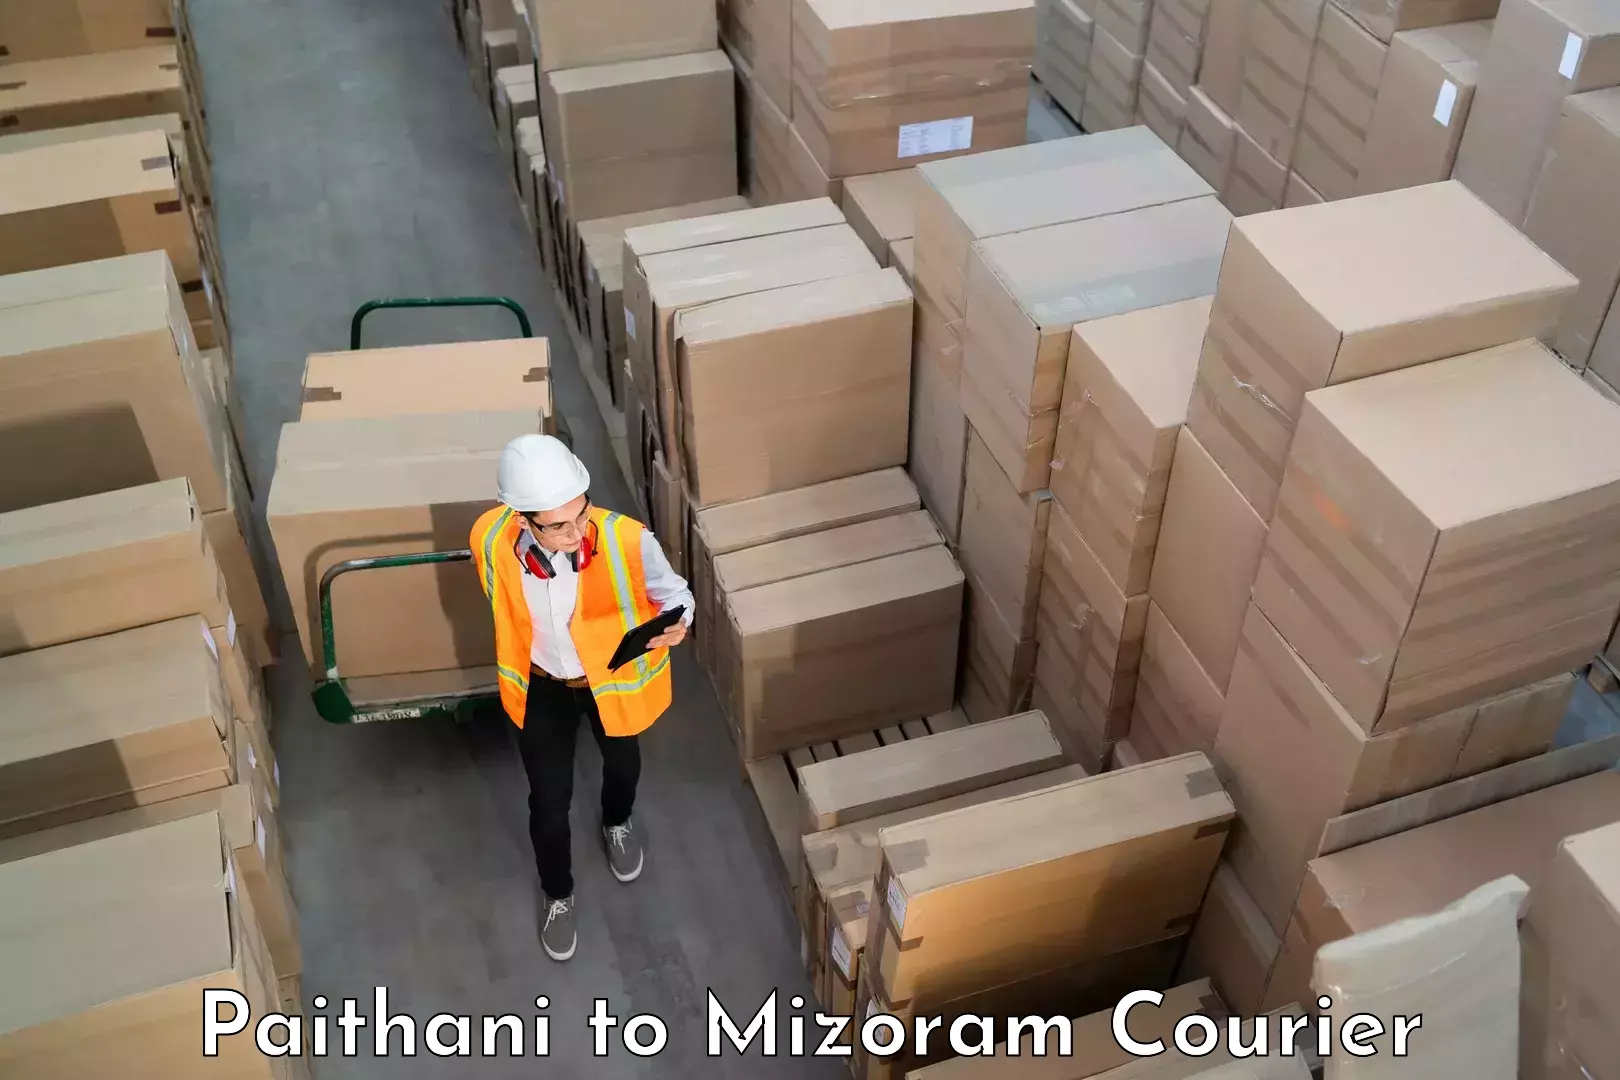 Luggage delivery estimate Paithani to Mizoram